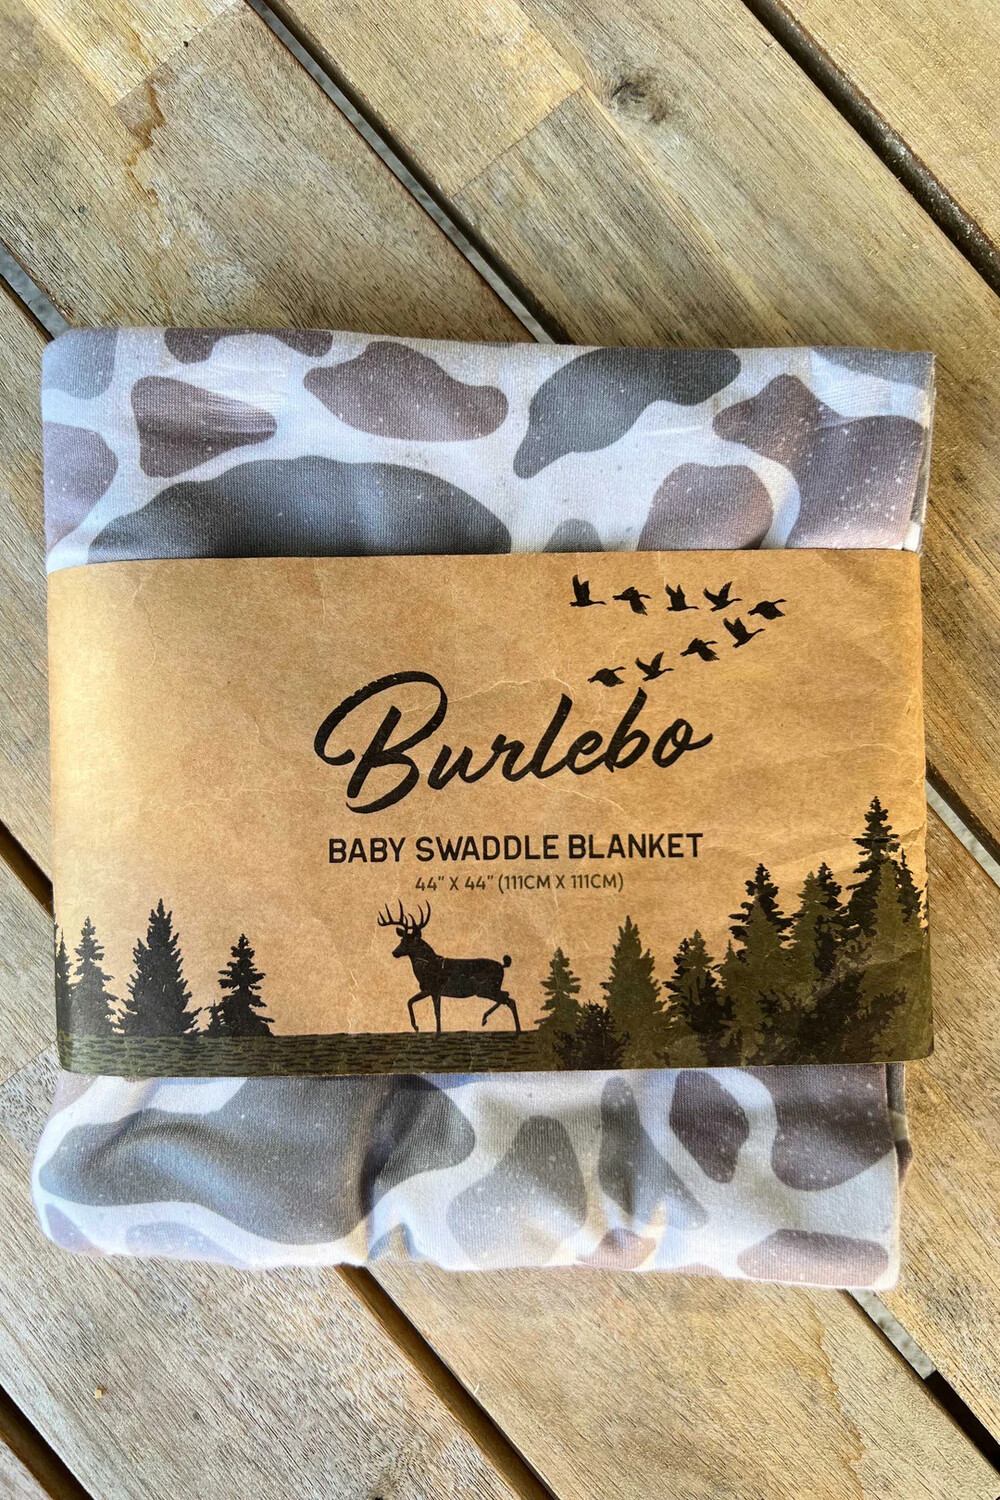 Burlebo Baby Swaddle Blanket